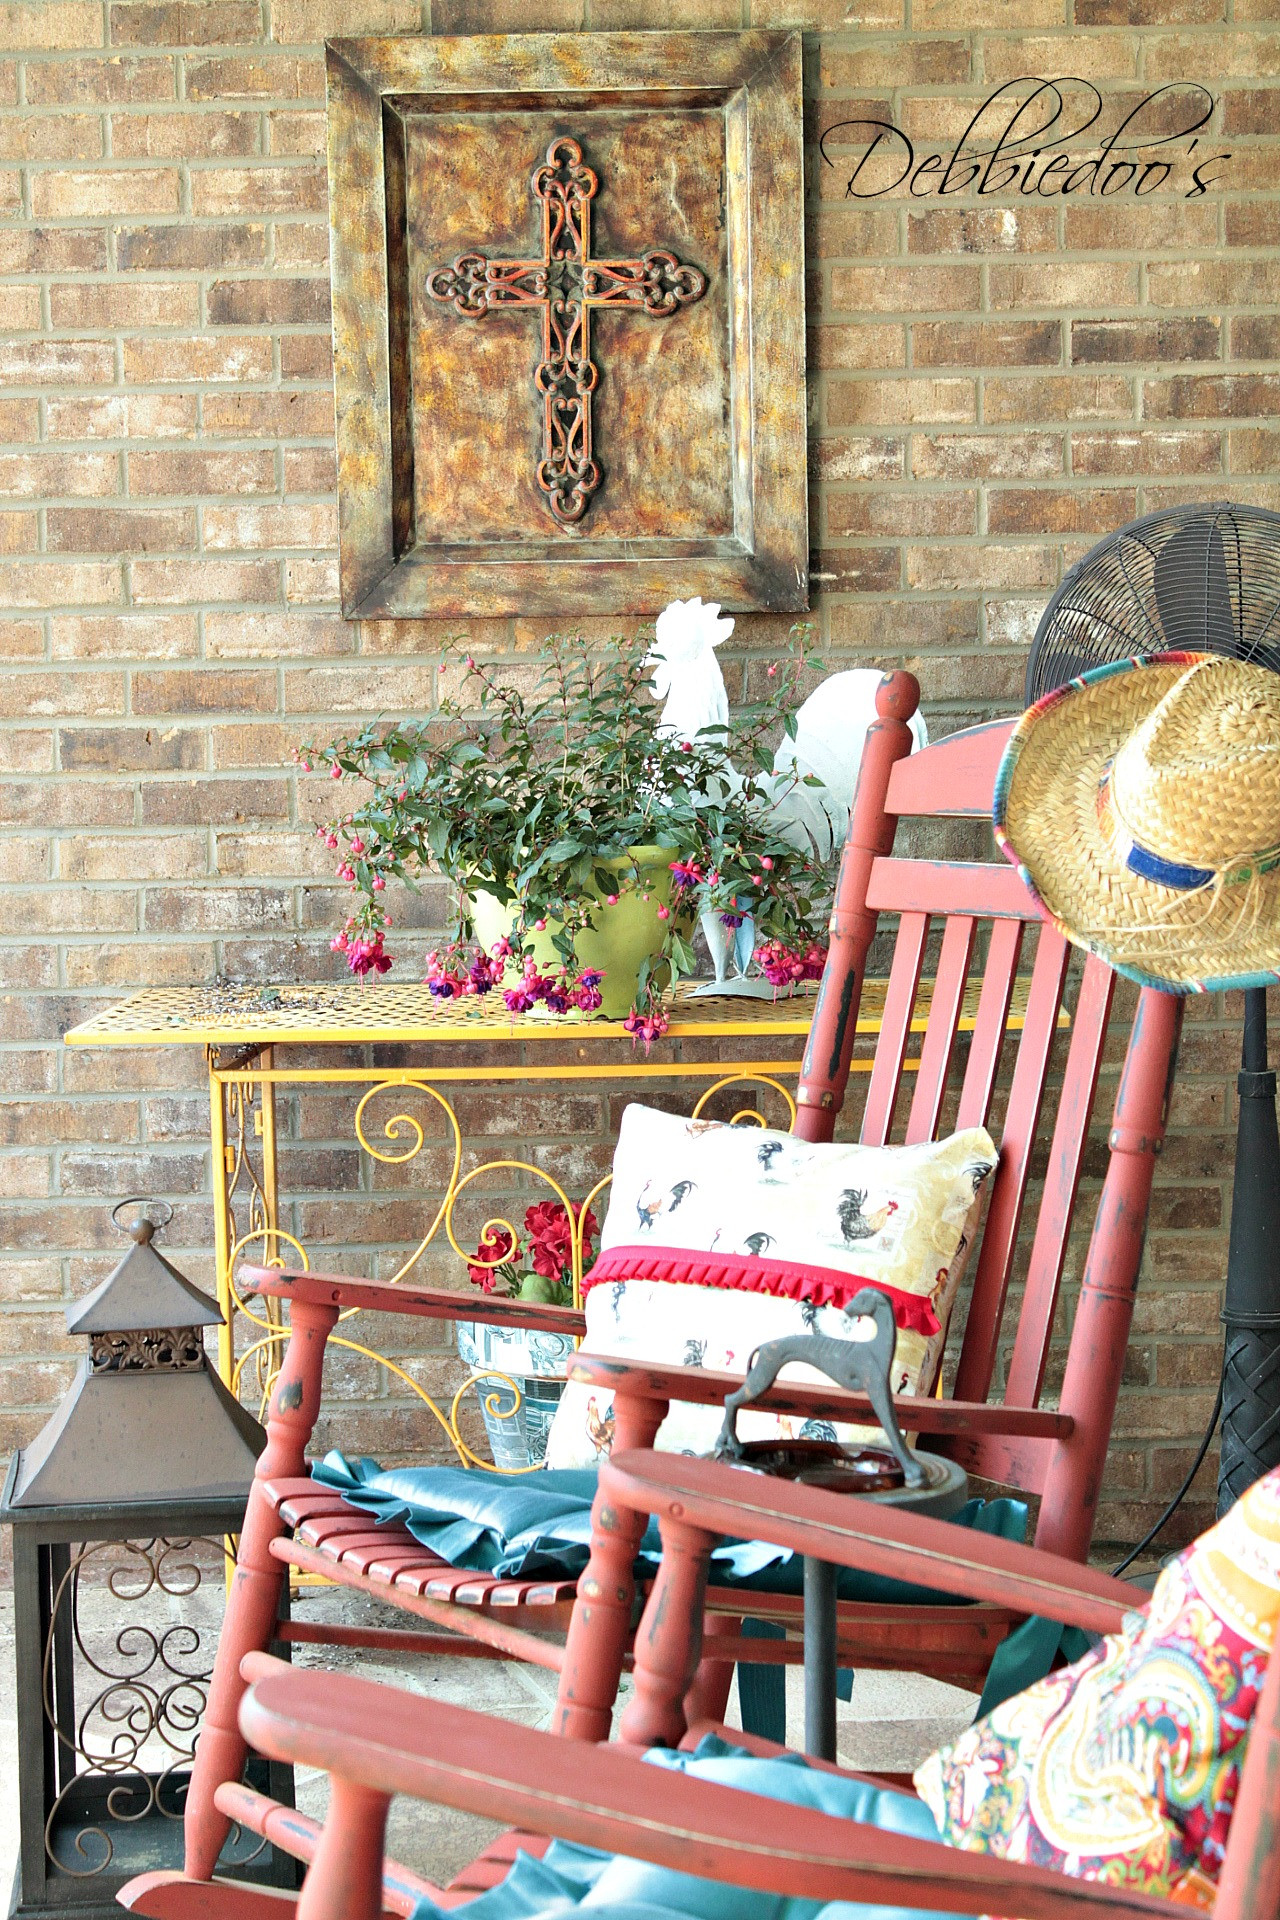 DIY Porch Decorating Ideas
 Patio and porch decorating and diy ideas Debbiedoos